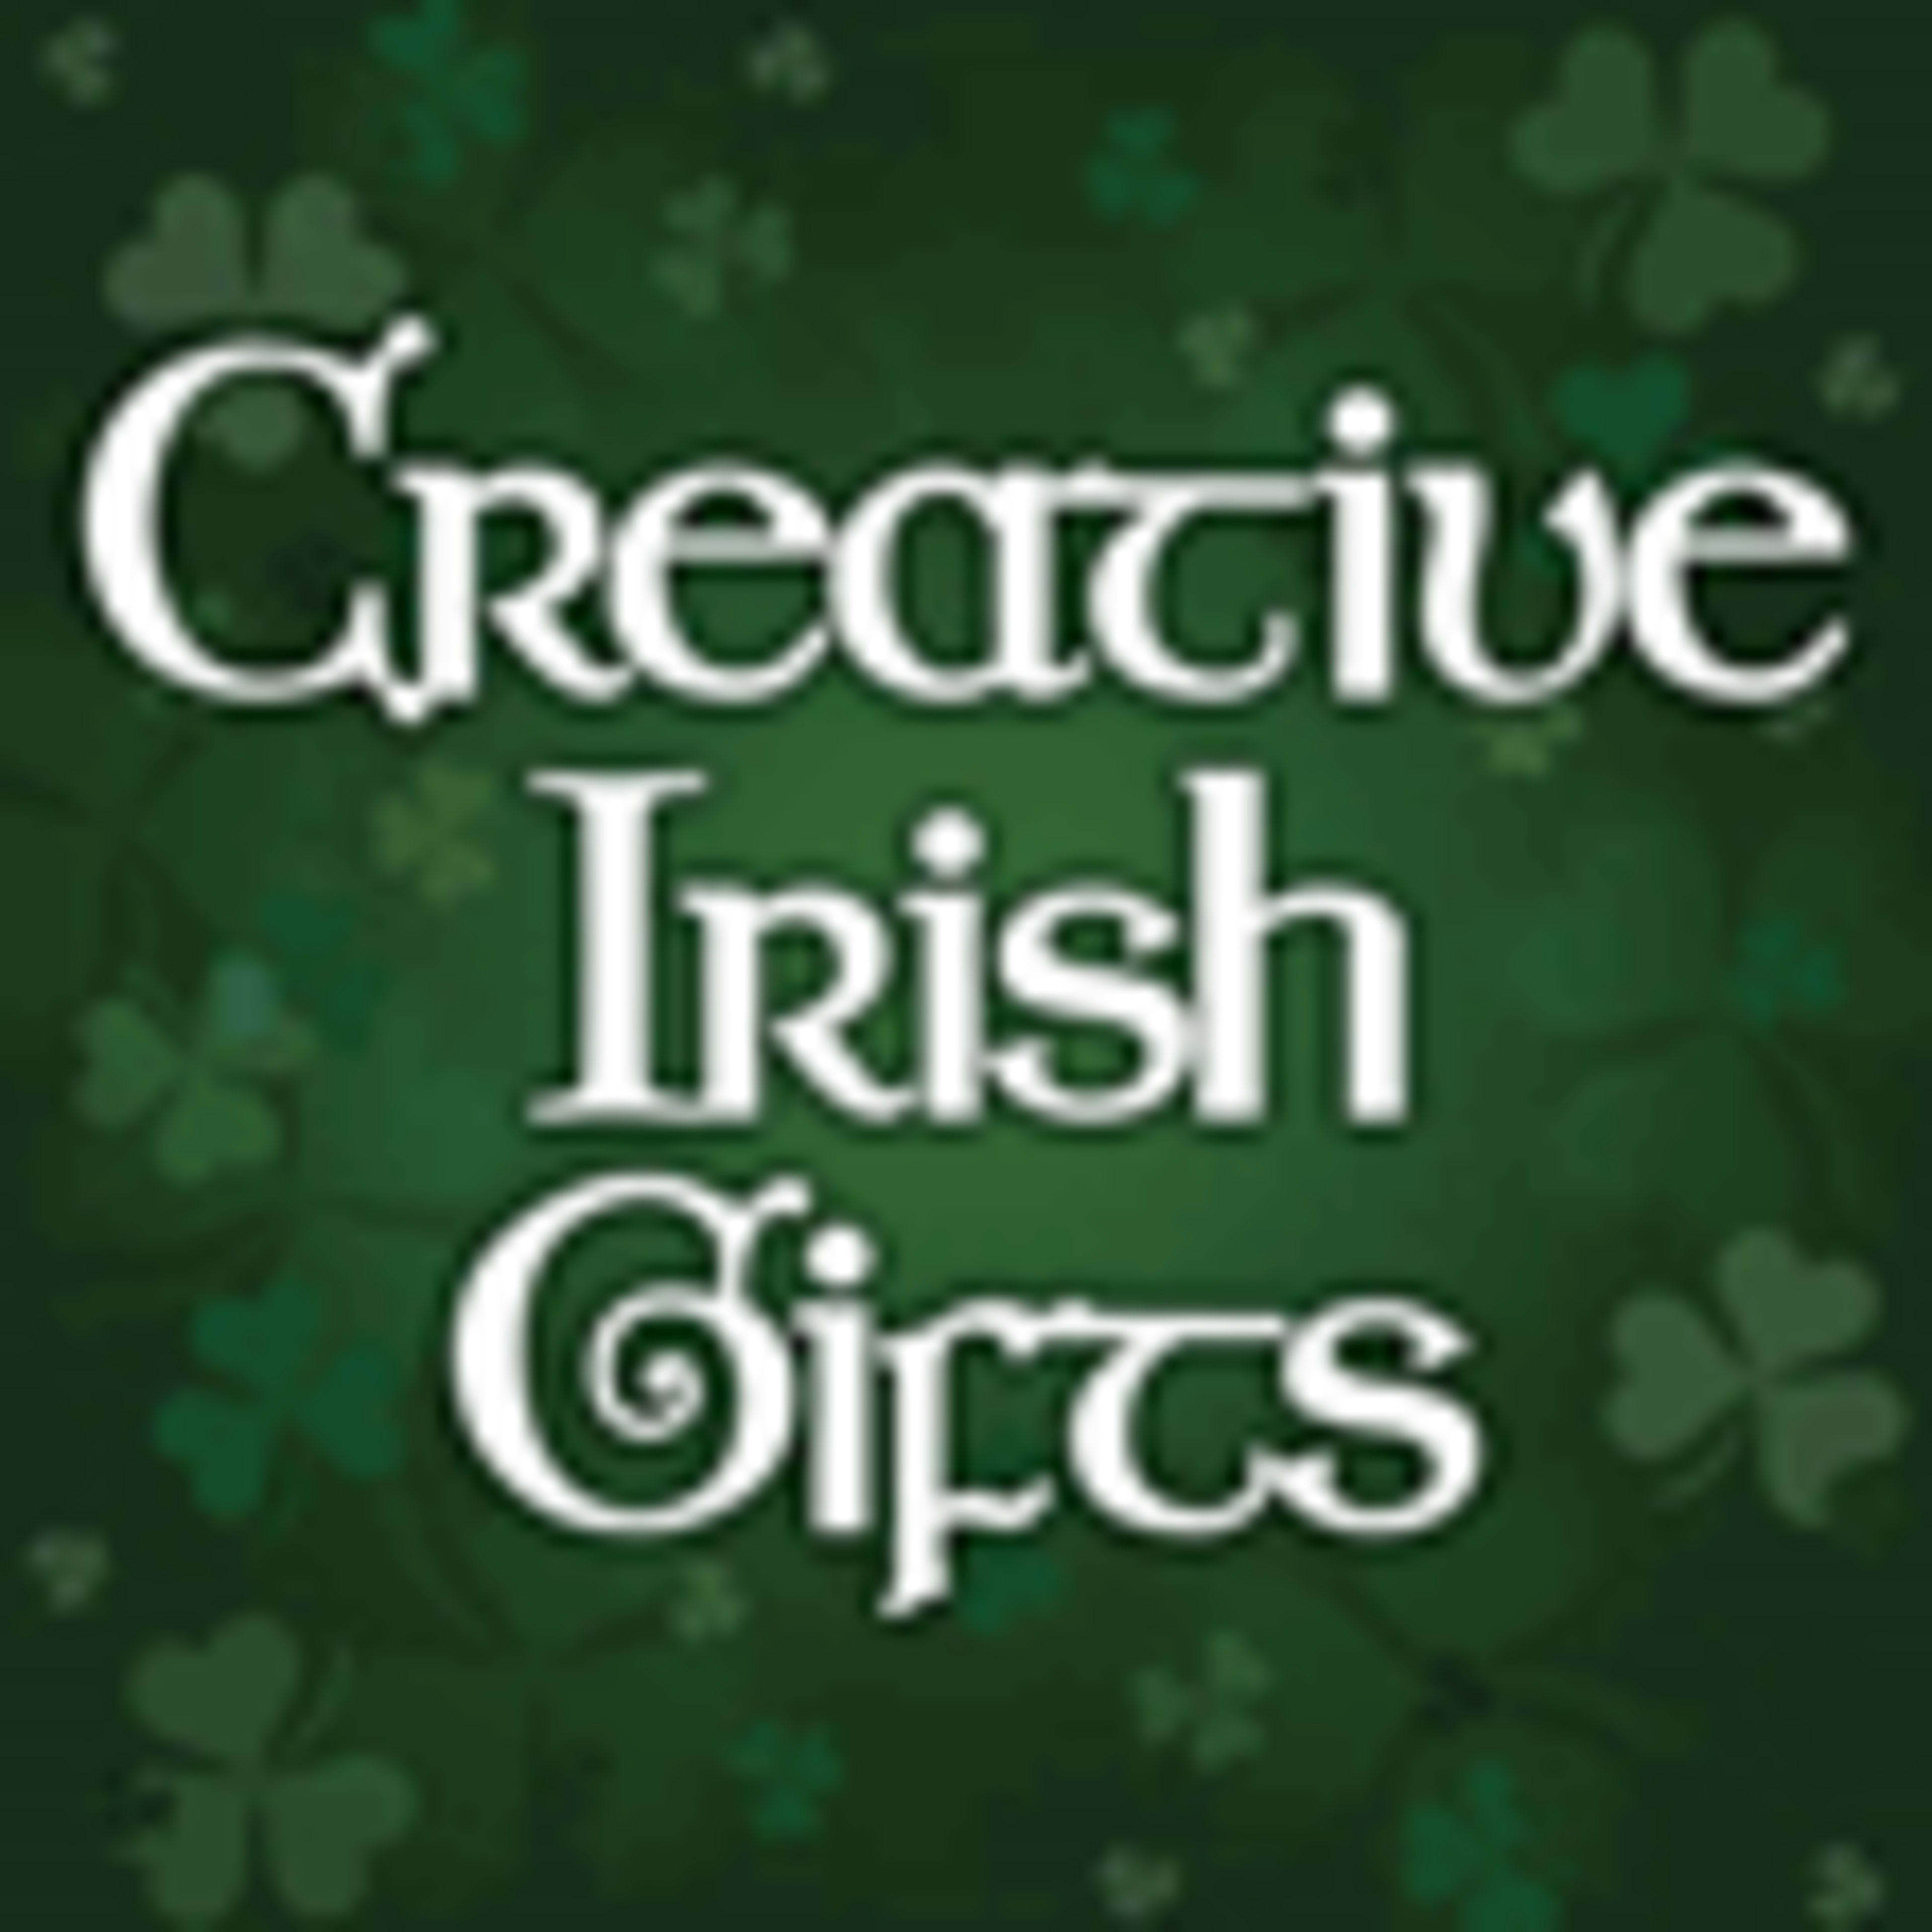 Creative Irish Gifts Code